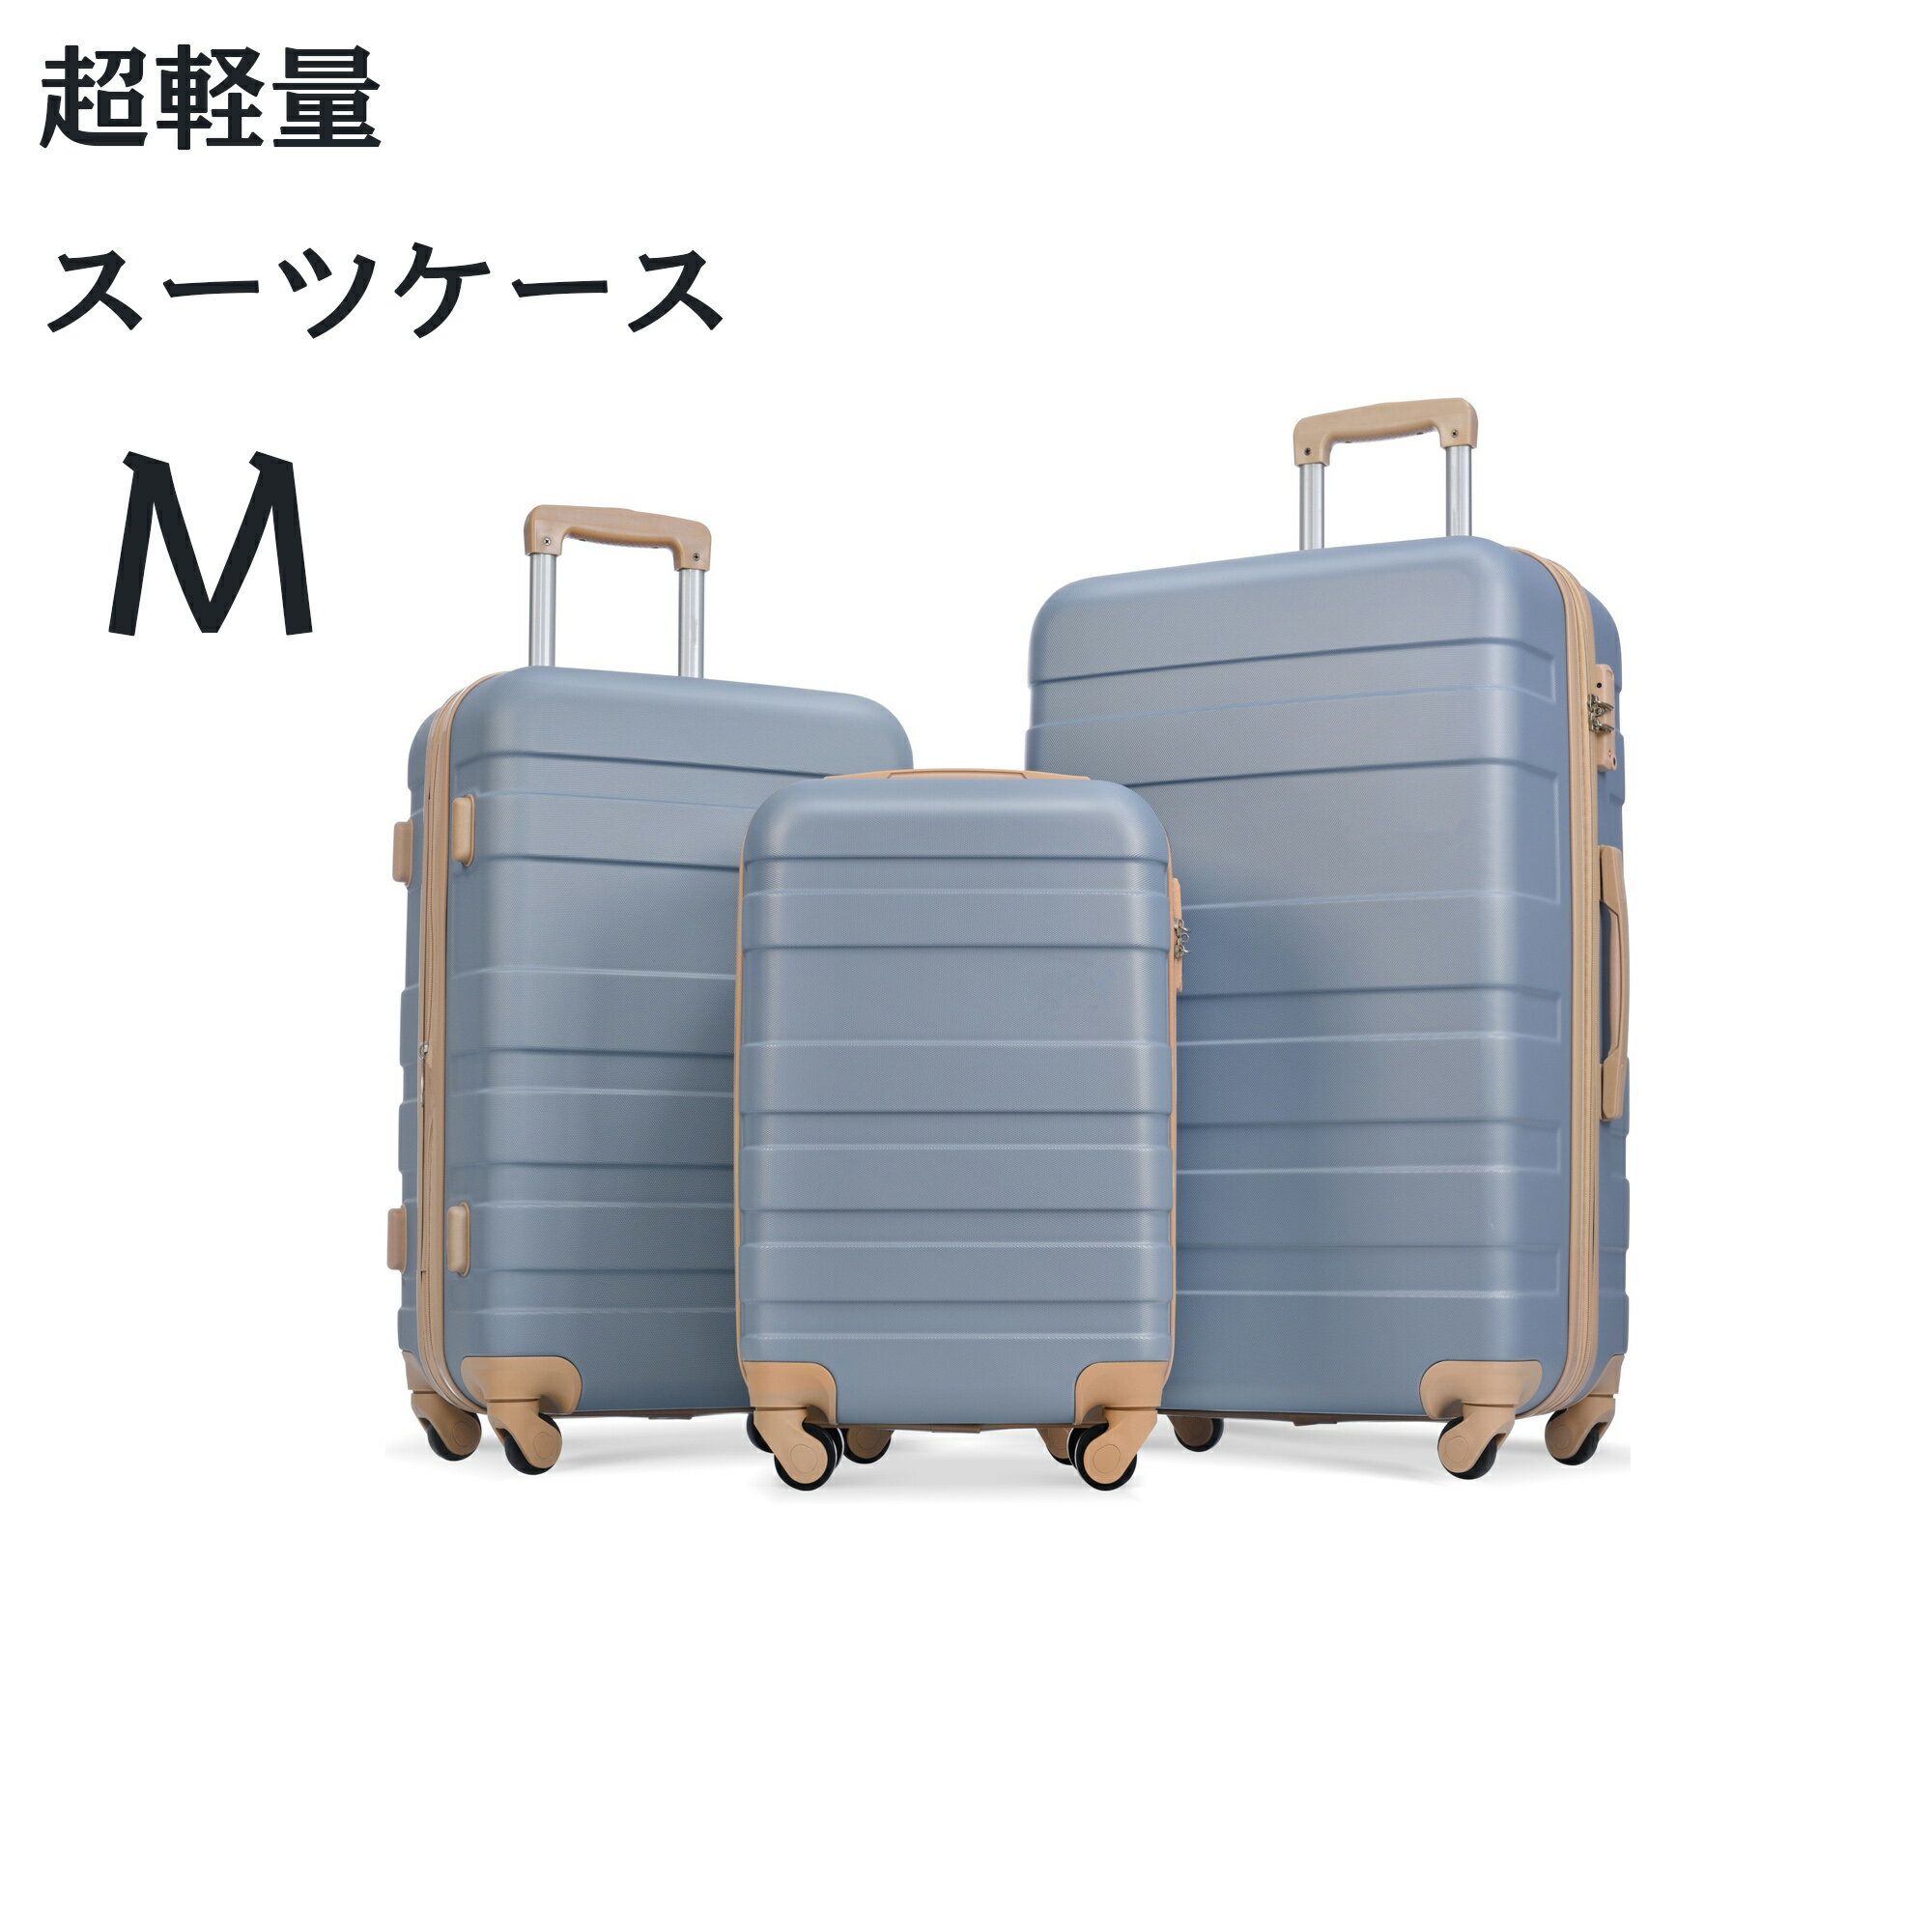 楽天萬源shop【Mサイズ 】スーツケース キャリーケース TSAロック キャリーバッグ 中型 かわいい 超軽量 ファスナー 海外 国内 旅行